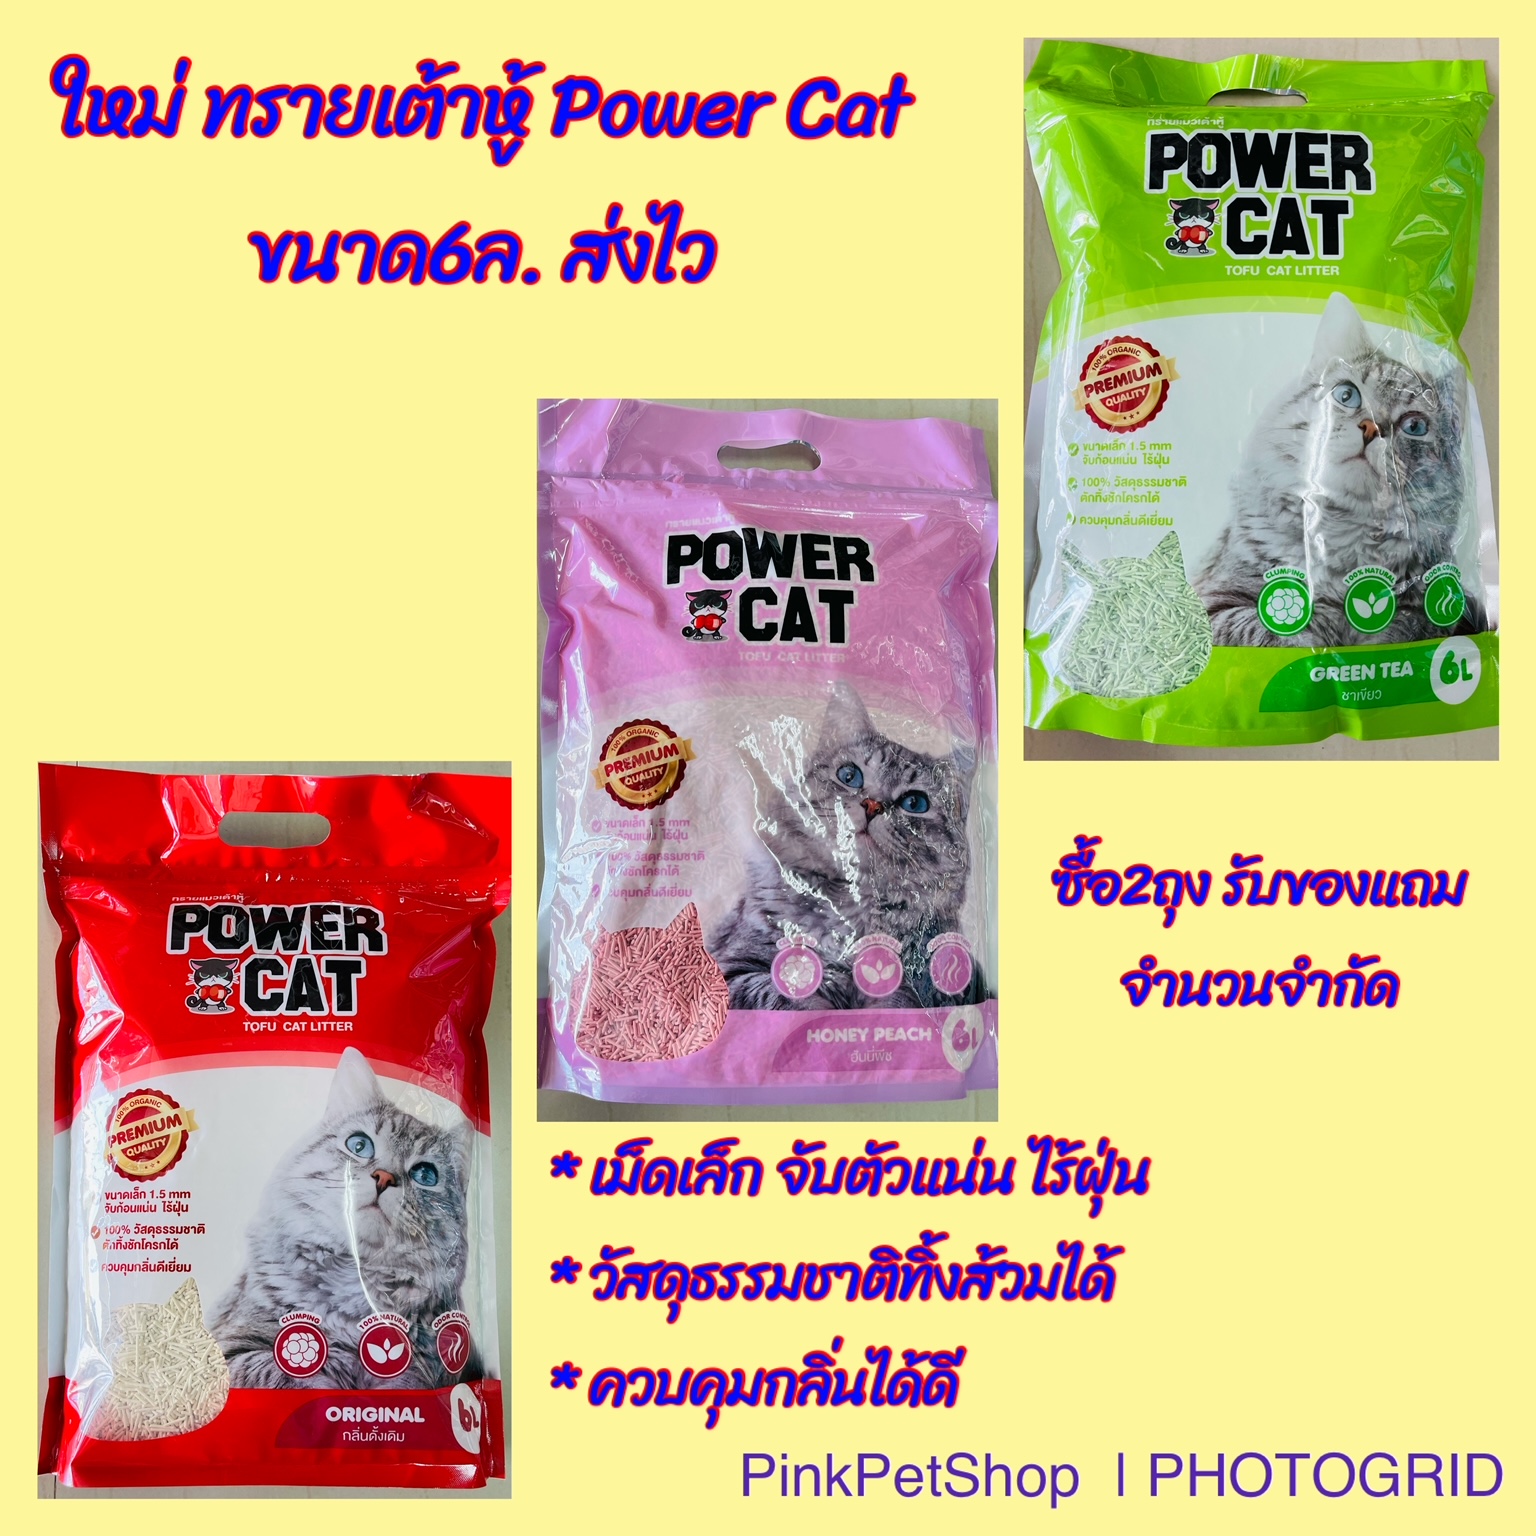 Power Cat tofu cat litter 6L. ทรายแมวเต้าหู้ ขนาด6ลิตร มีให้เลือก3กลิ่น